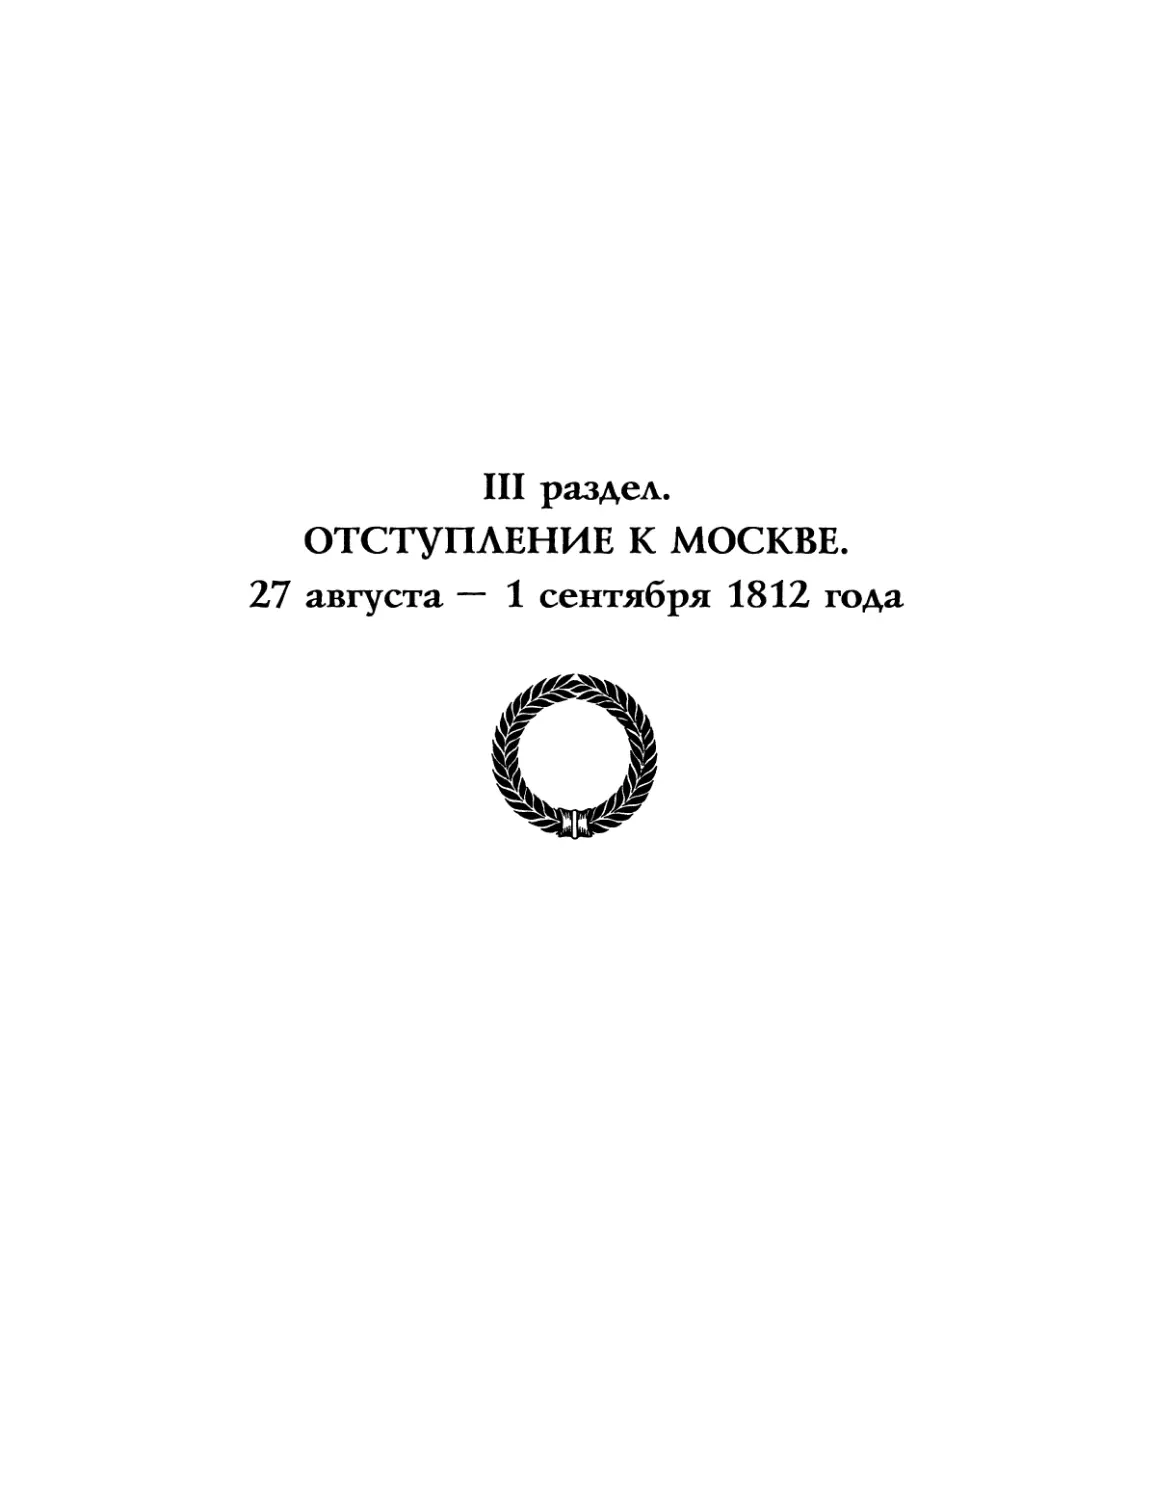 Отступление к Москве. 27 августа — 1 сентября 1812 года